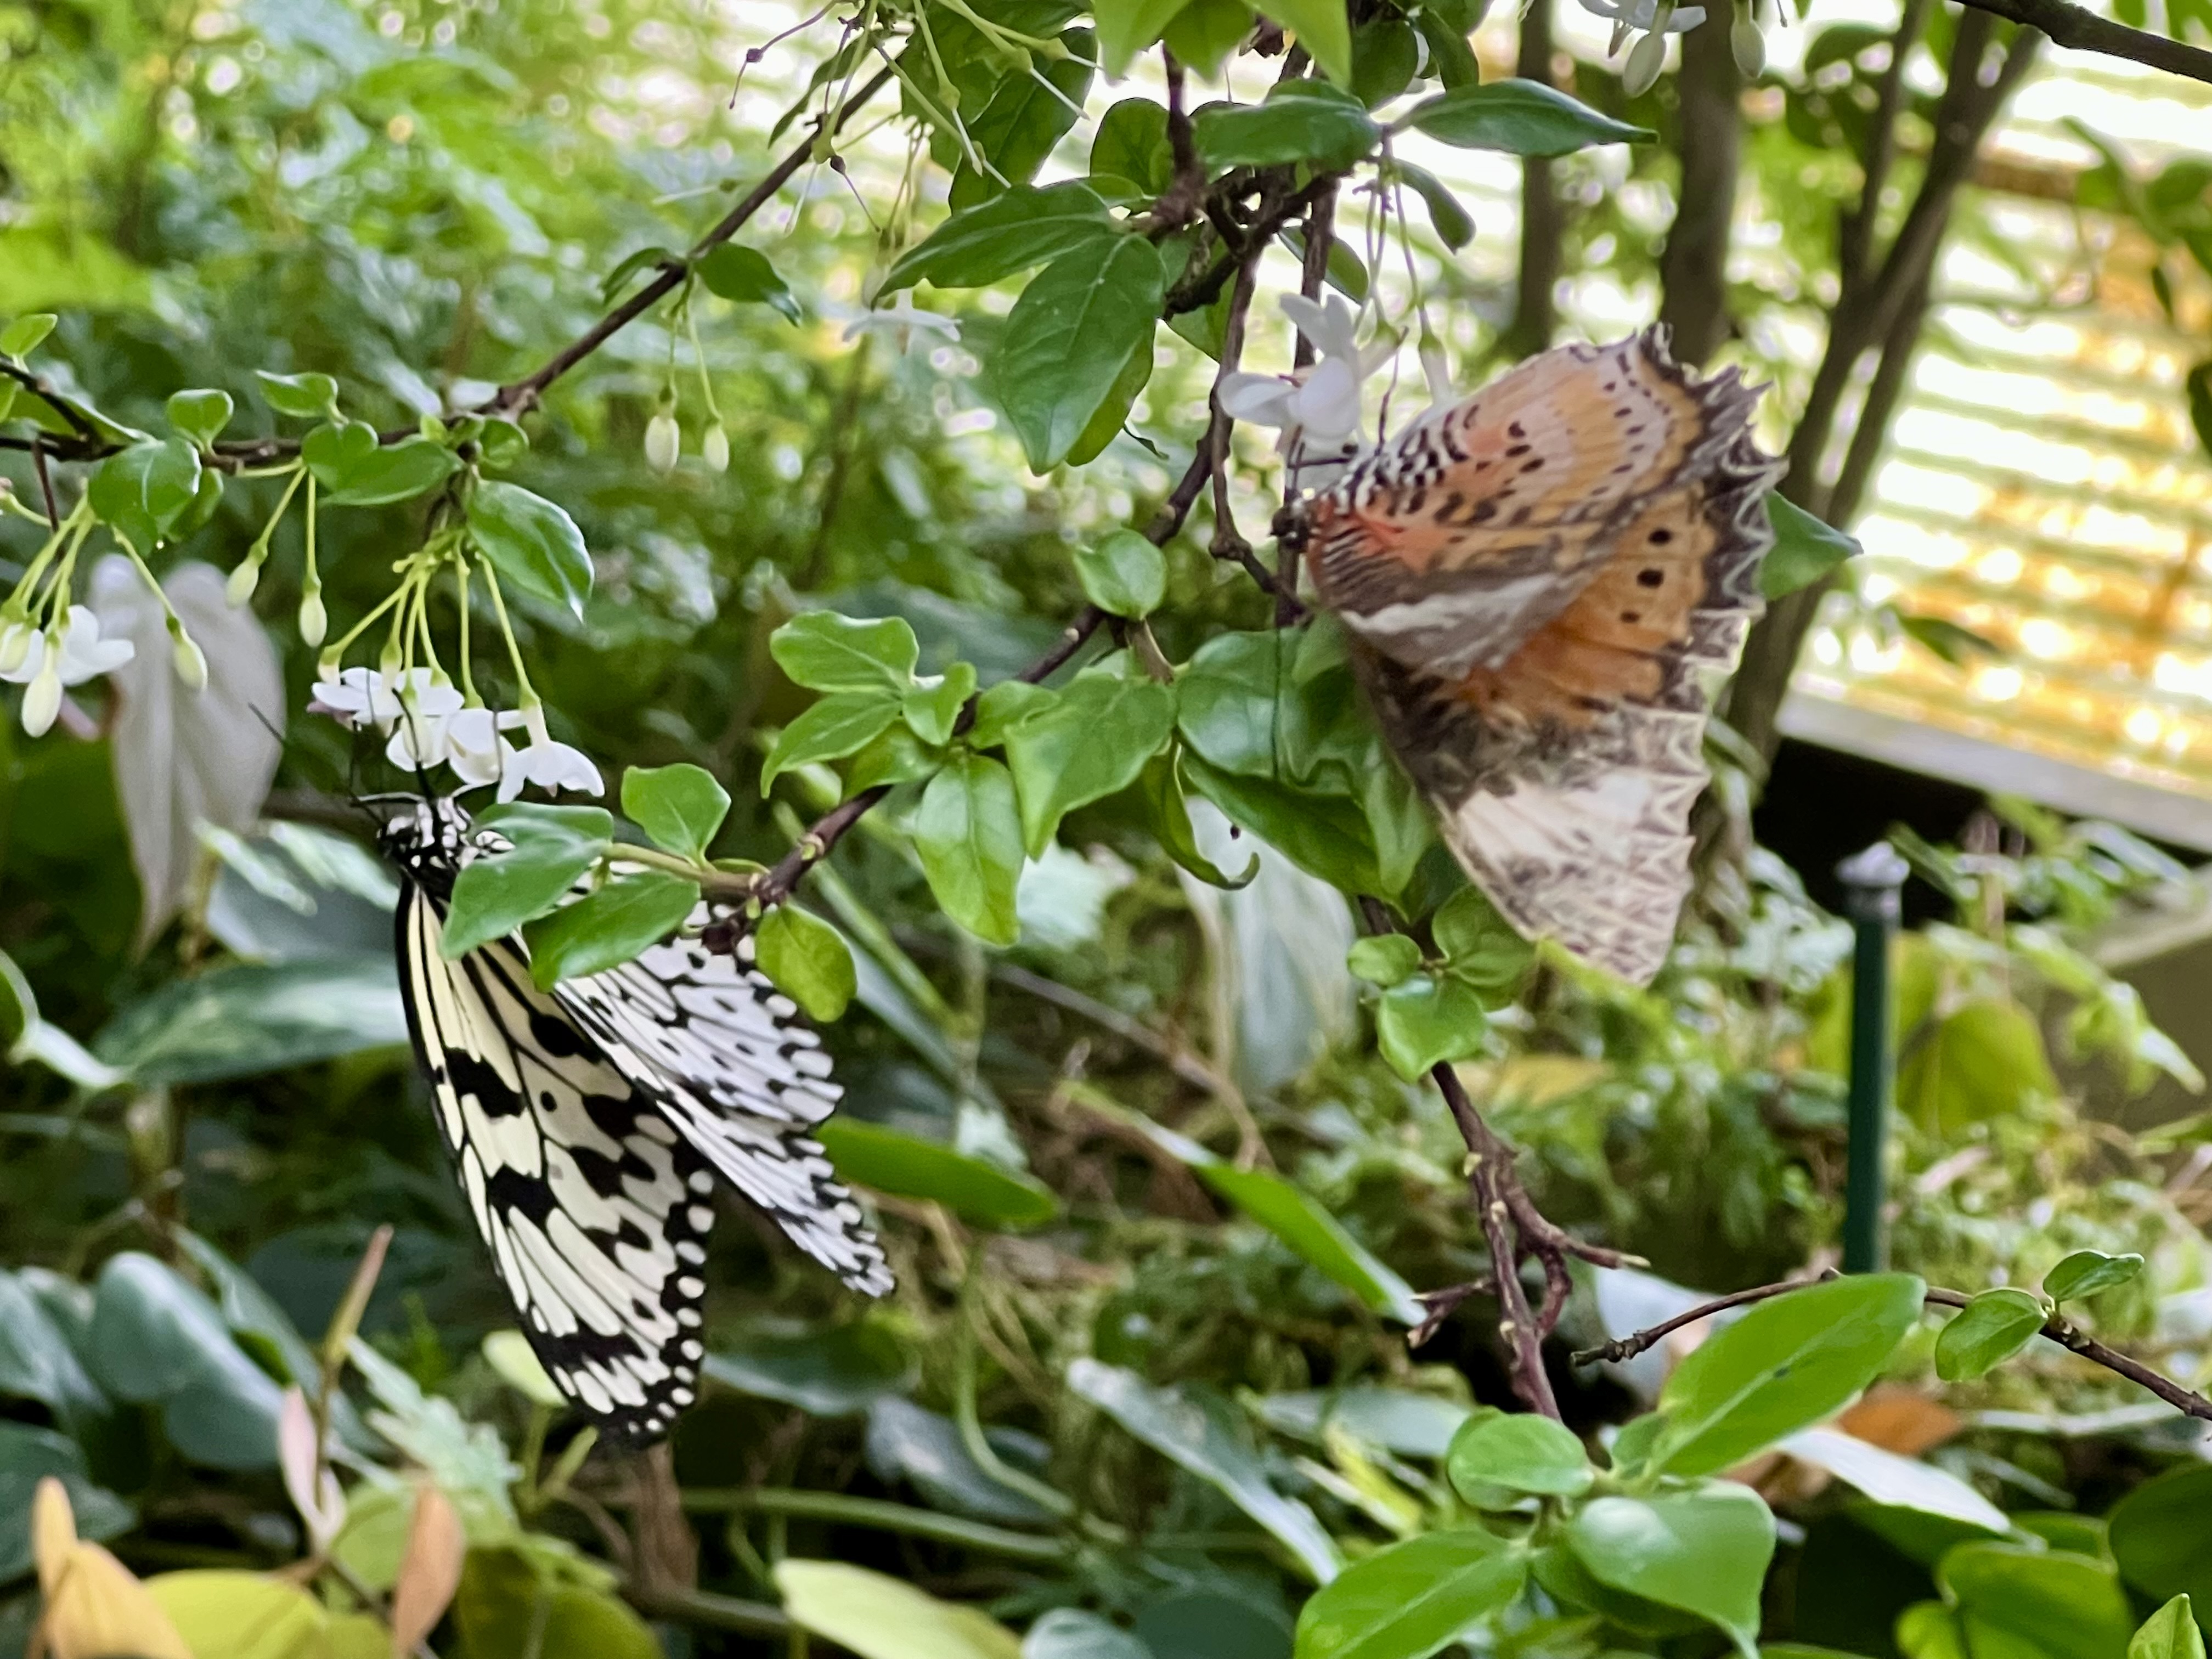 butterflies on a tree branch